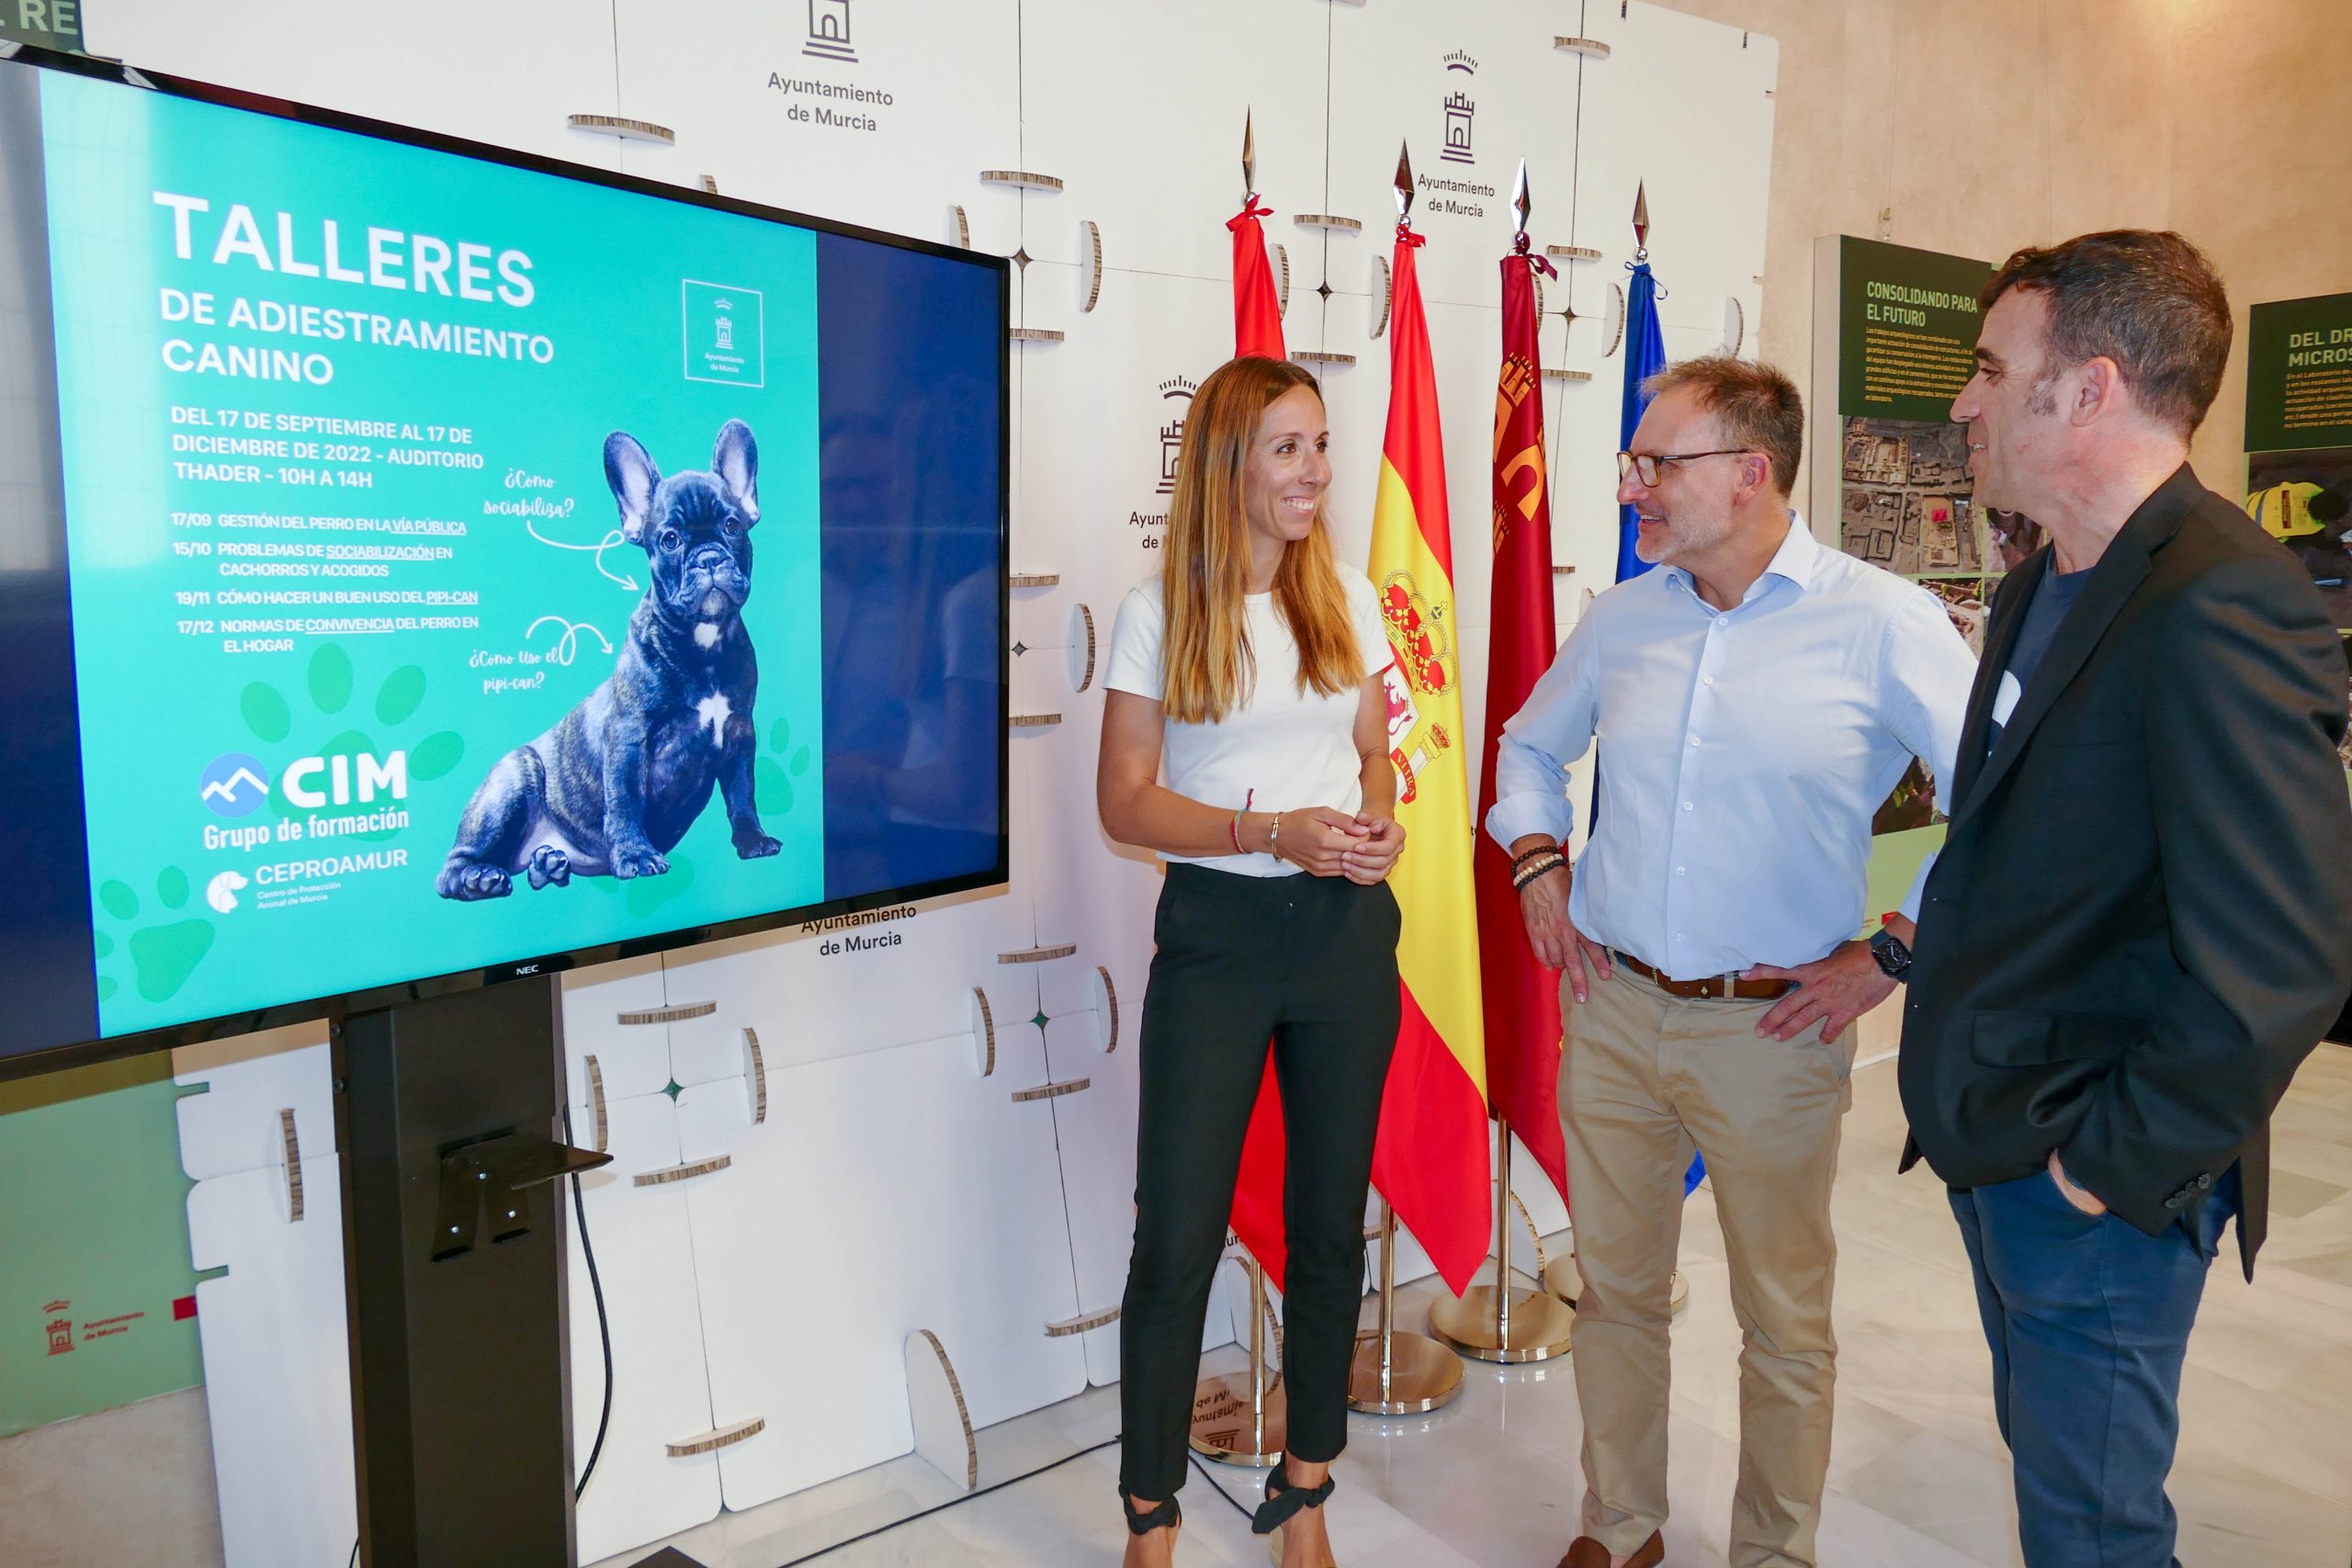 Talleres caninos Ayuntamiento de Murcia 2022